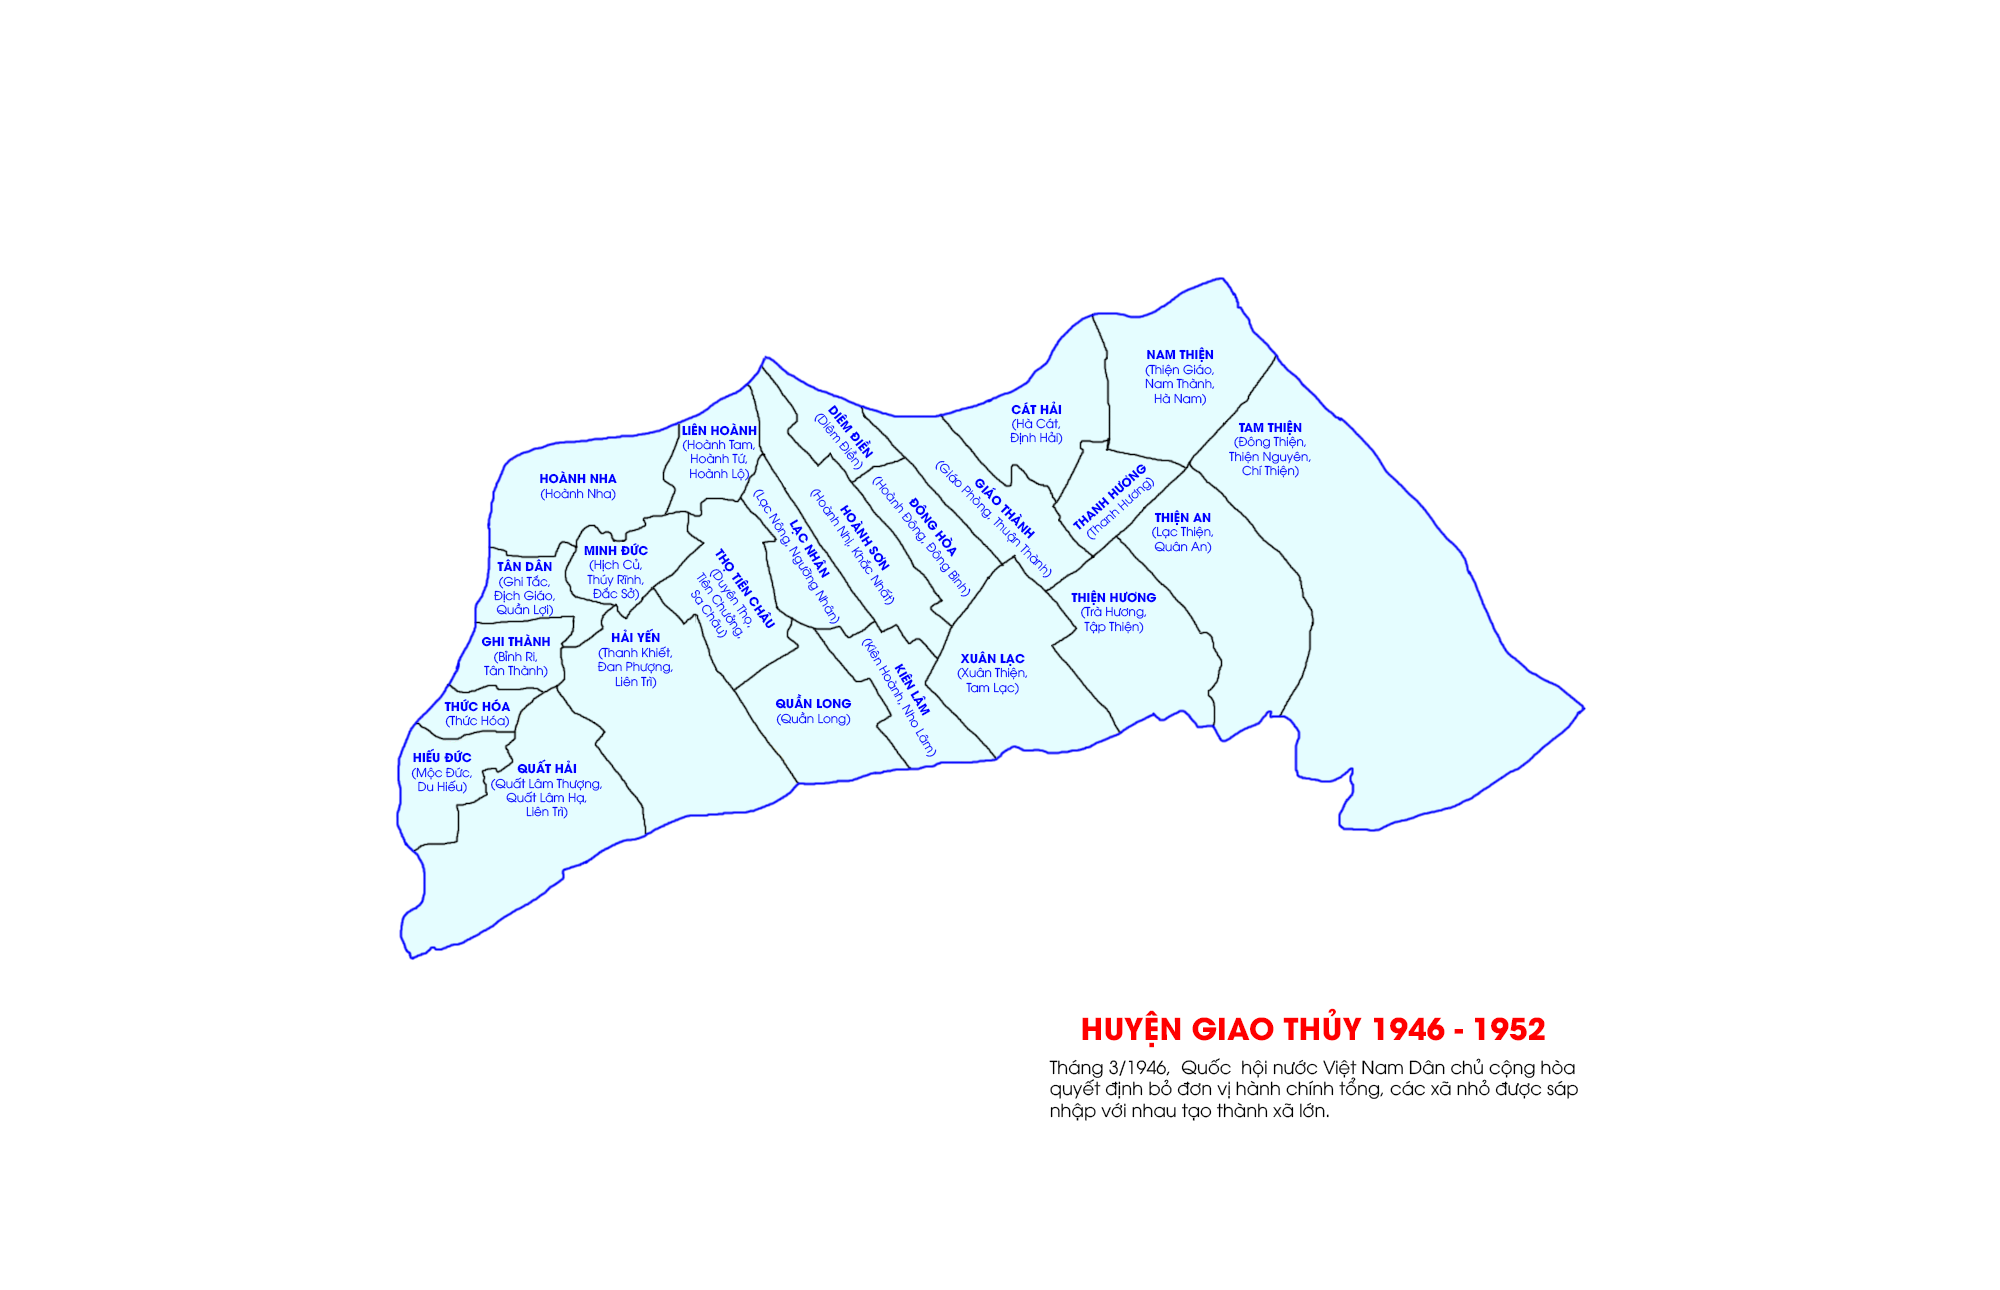 Hành chính huyện Giao Thủy từ năm 1946 đến năm 1956